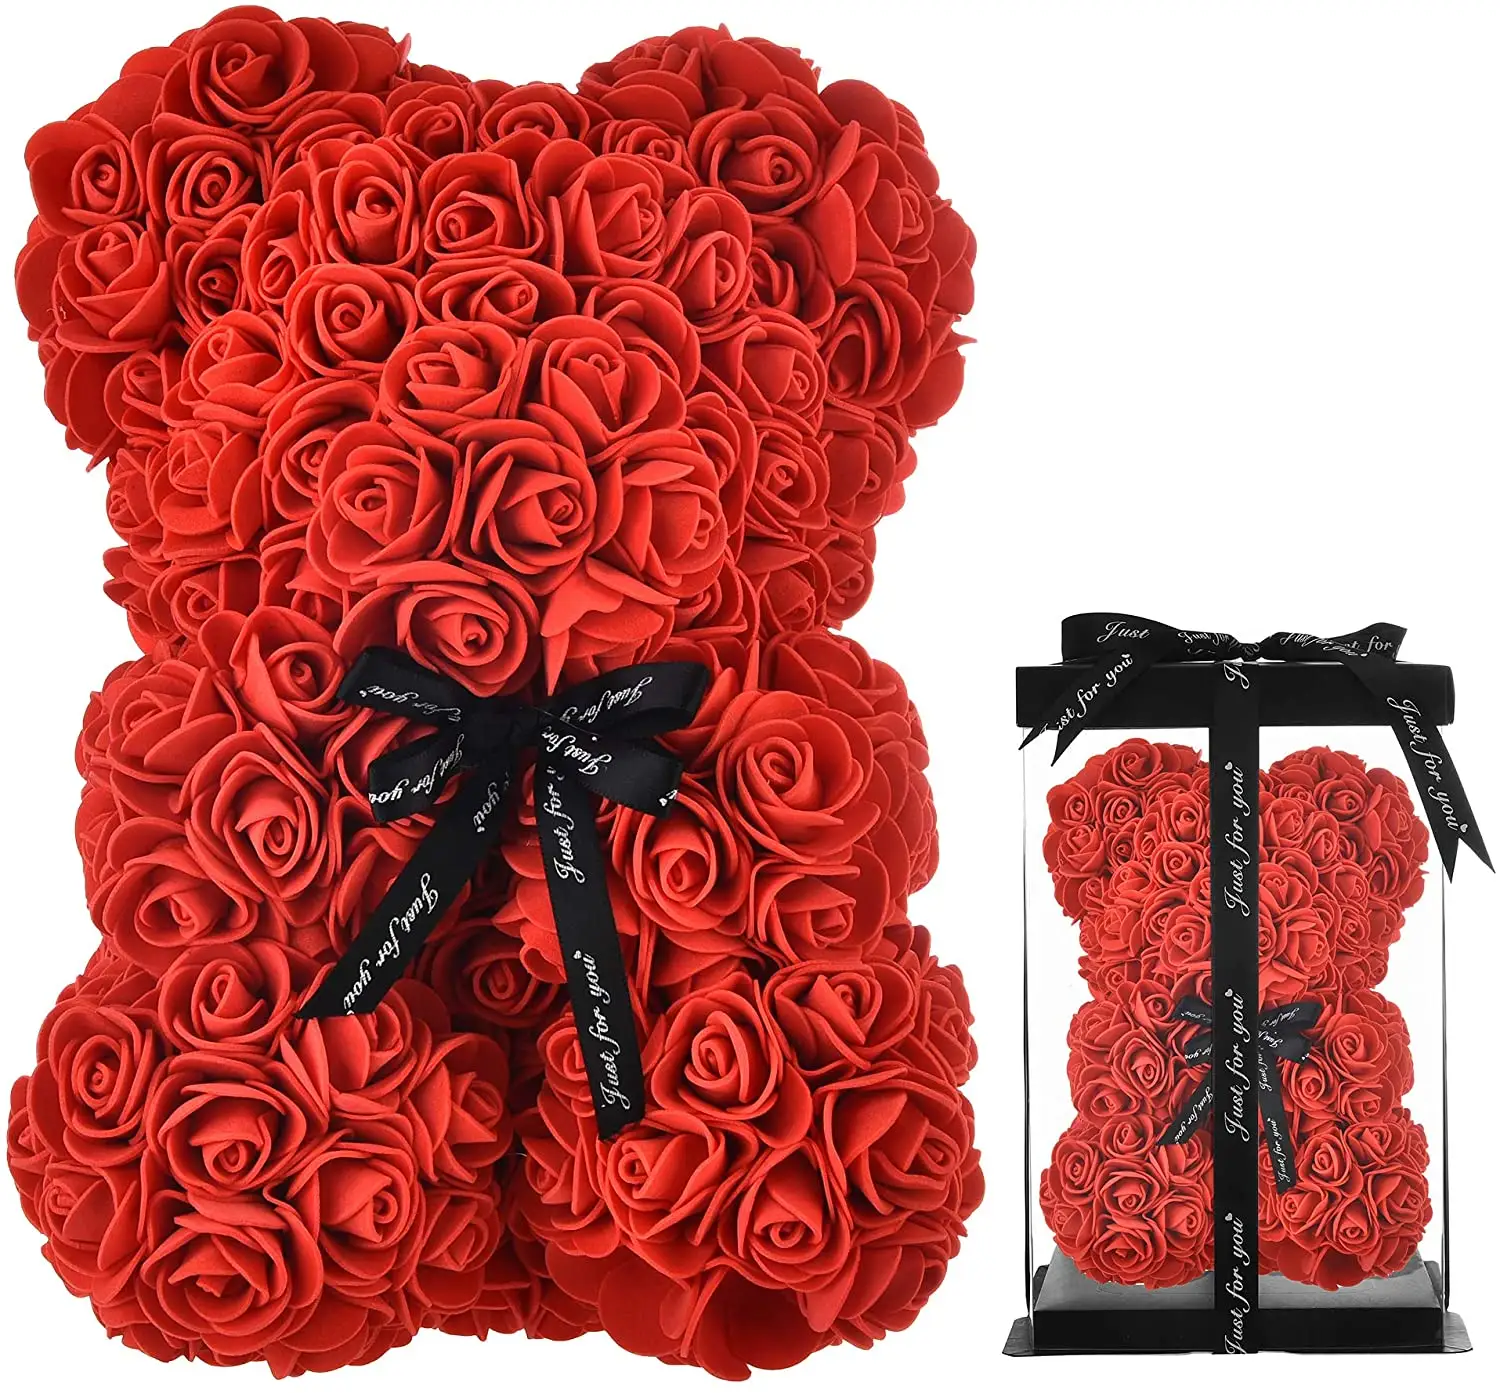 Benutzer definierte 25cm Rose Bär mit Band Teddybär für Muttertag Geschenke Teddy Rose Bär Hochzeit Valentinstag Geschenk Dekor Lieferungen